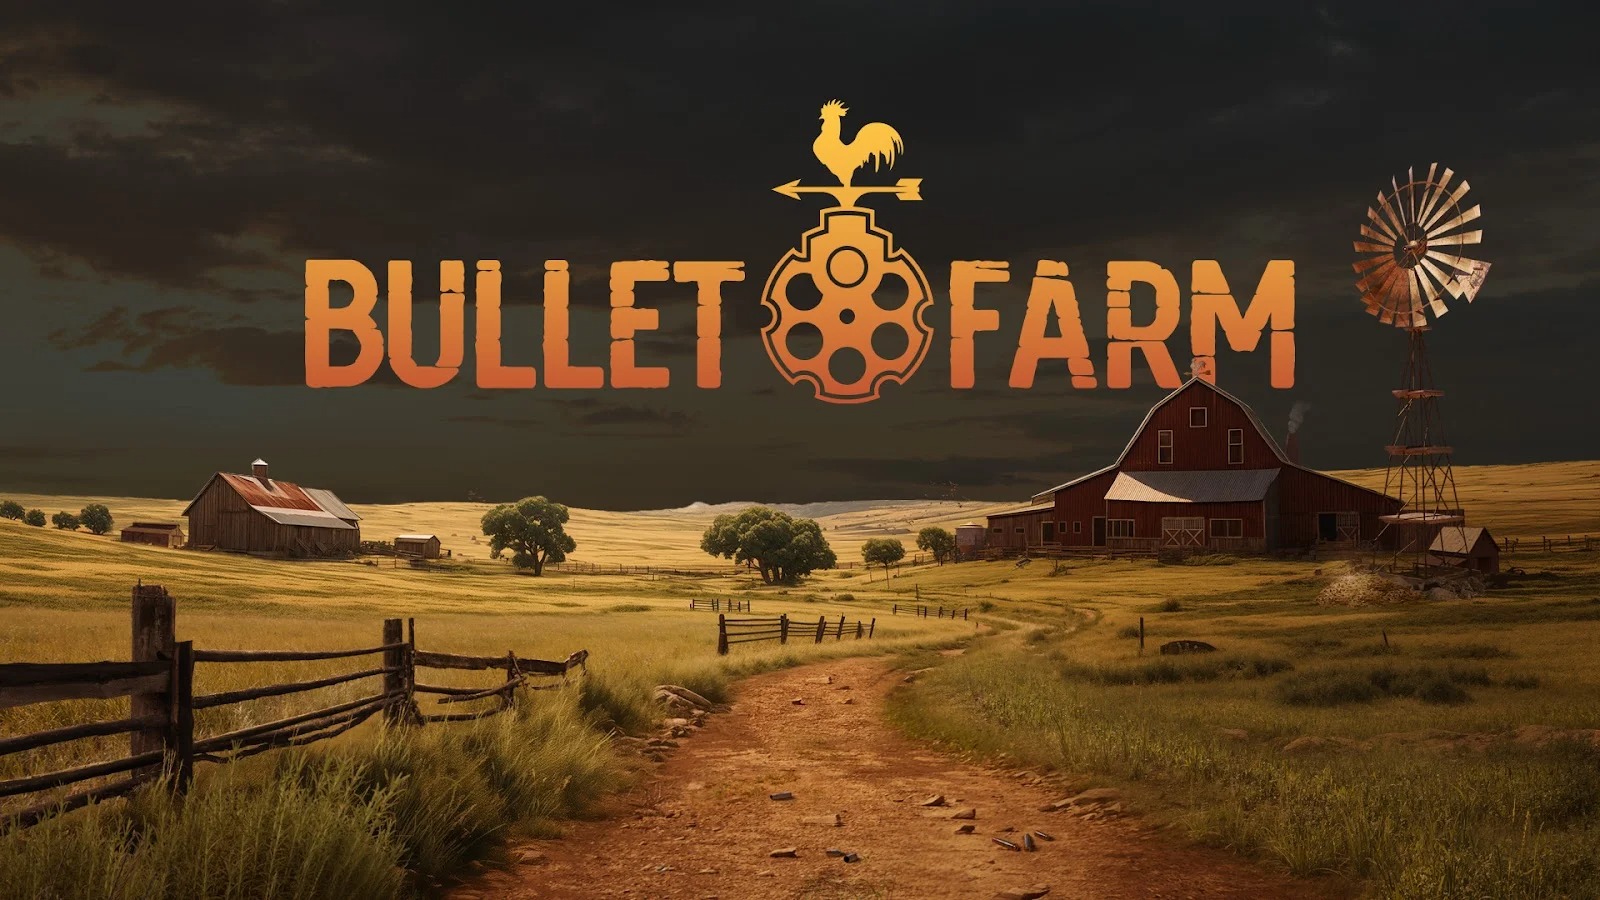 سازنده پیشین Call of Duty استودیو جدید BulletFarm را تاسیس کرد